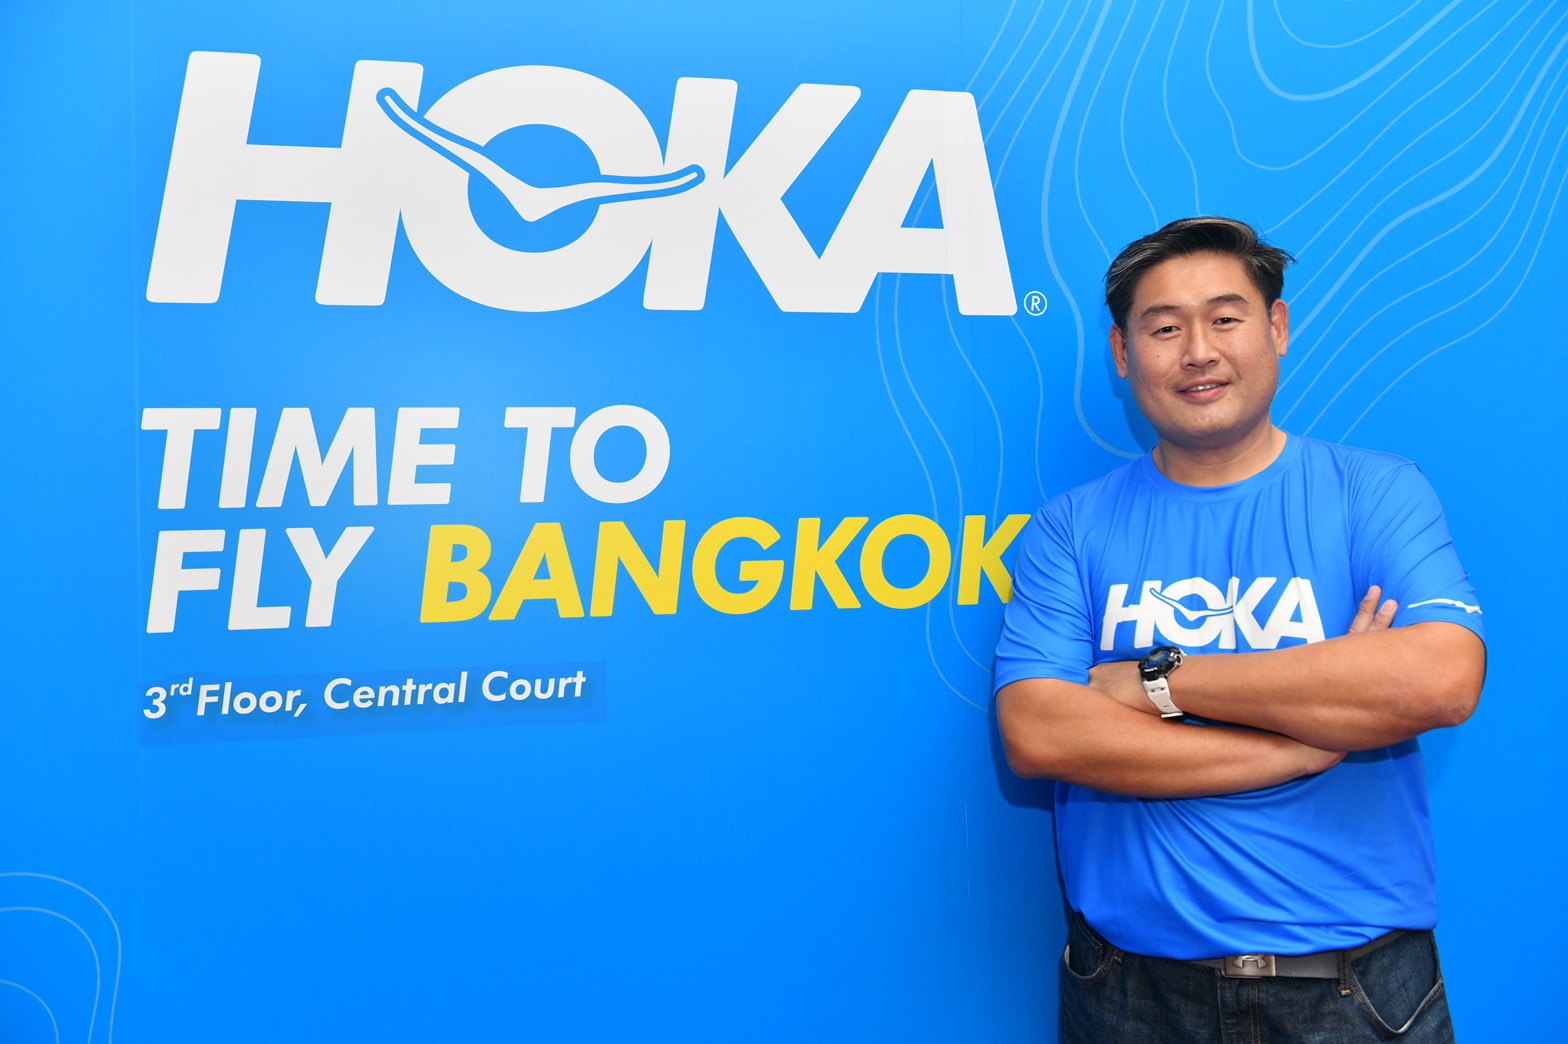 เรฟ อีดิชั่น เปิดตัว HOKA EXPERIENCE STORE แห่งแรกในประเทศไทย เอาใจสาวกสายวิ่ง พร้อมชวนสัมผัสประสบการณ์ใหม่สุดพิเศษ ได้แล้ววันนี้!